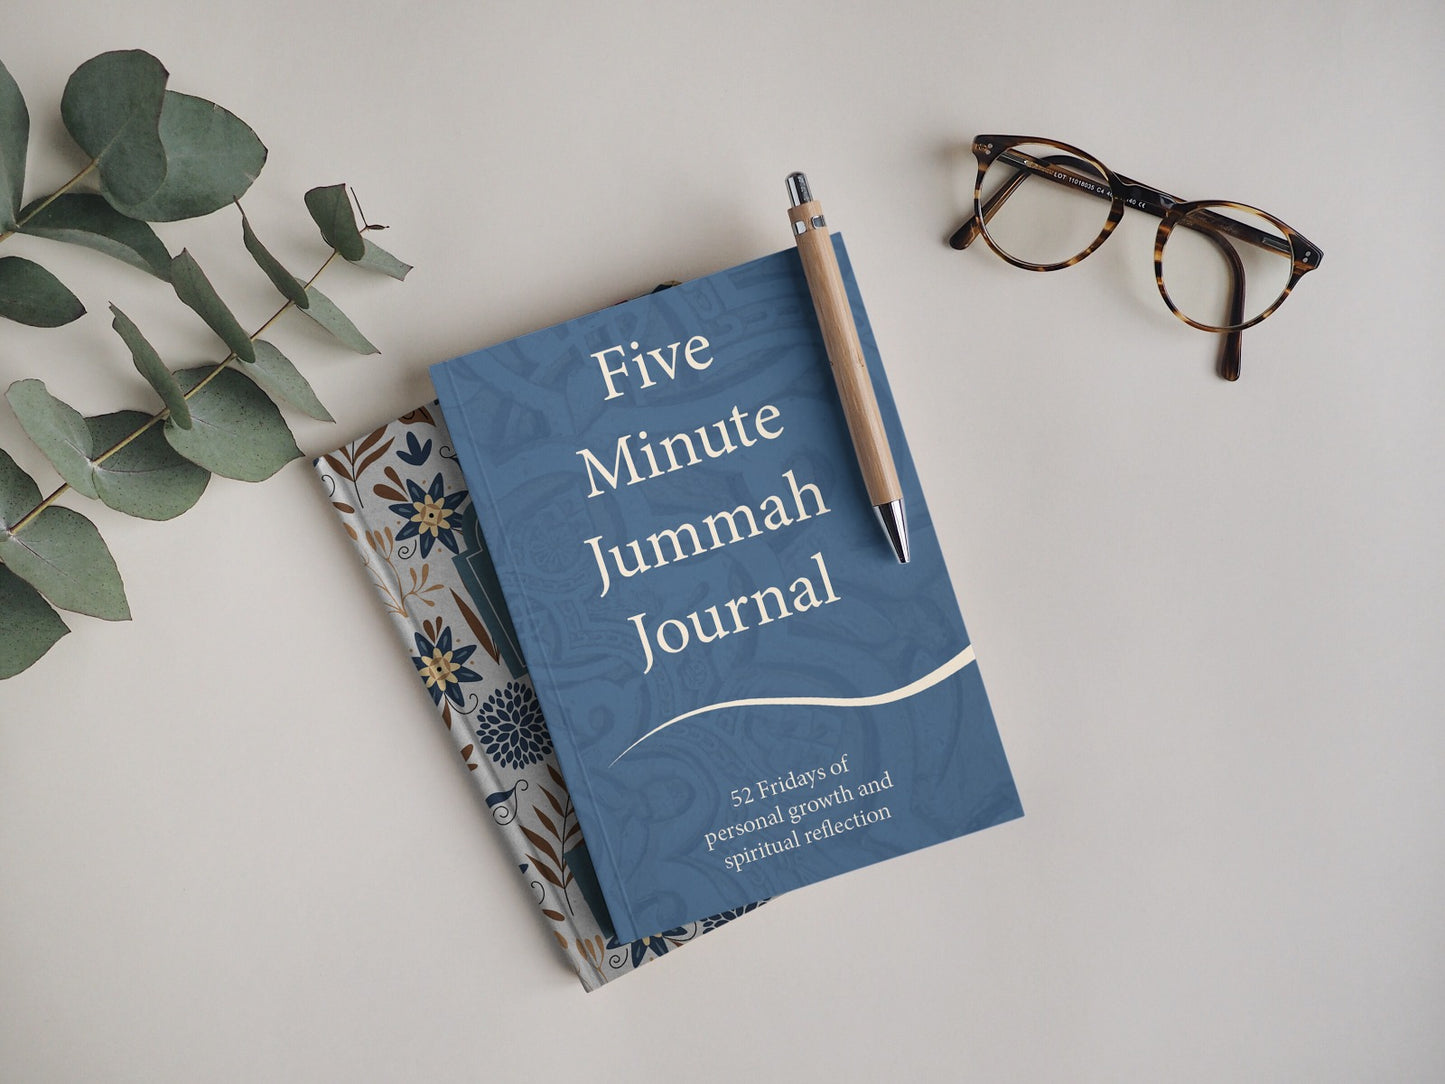 Five Minute Jummah Journal